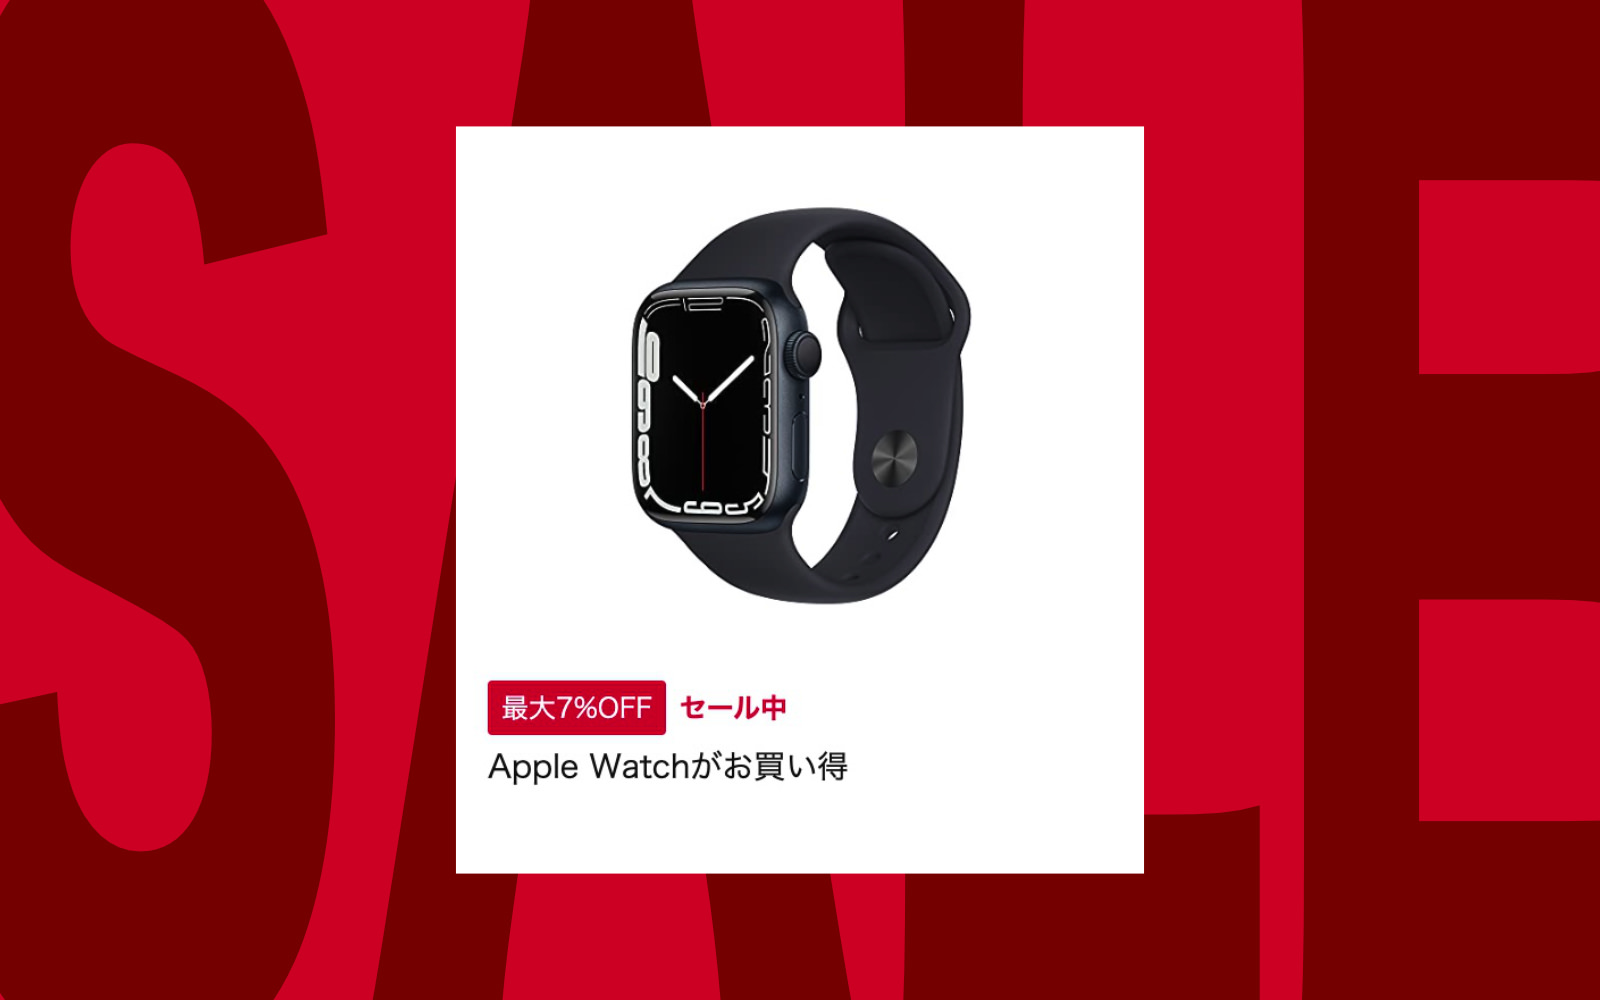 Apple Watch Series 7 sale on amazon